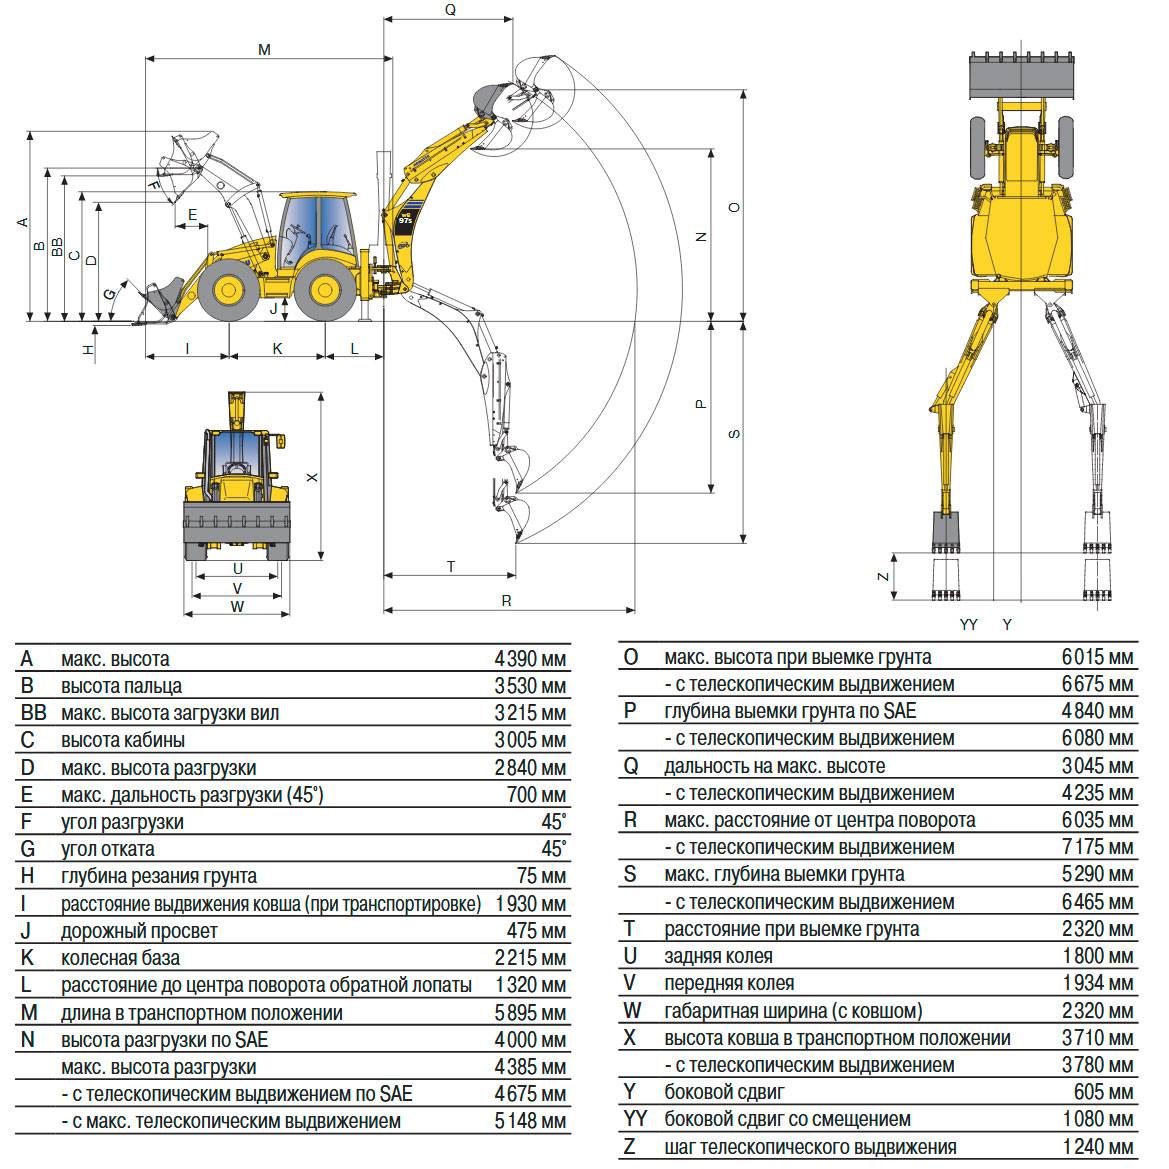 Экскаватор komatsu pc300-8: технические характеристики, конструкция, модификации